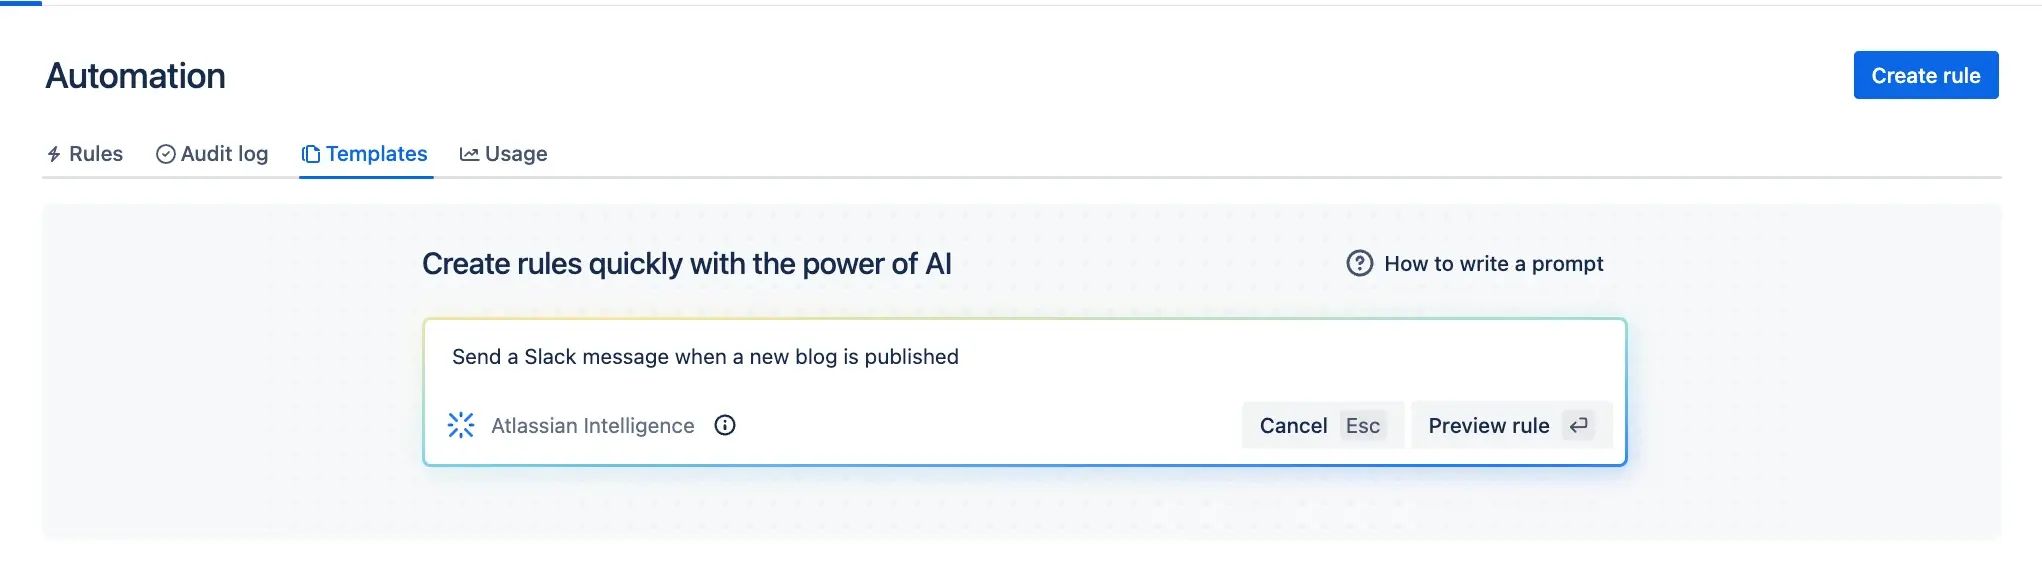 Przykład 1 automatyzacji SI Atlassian